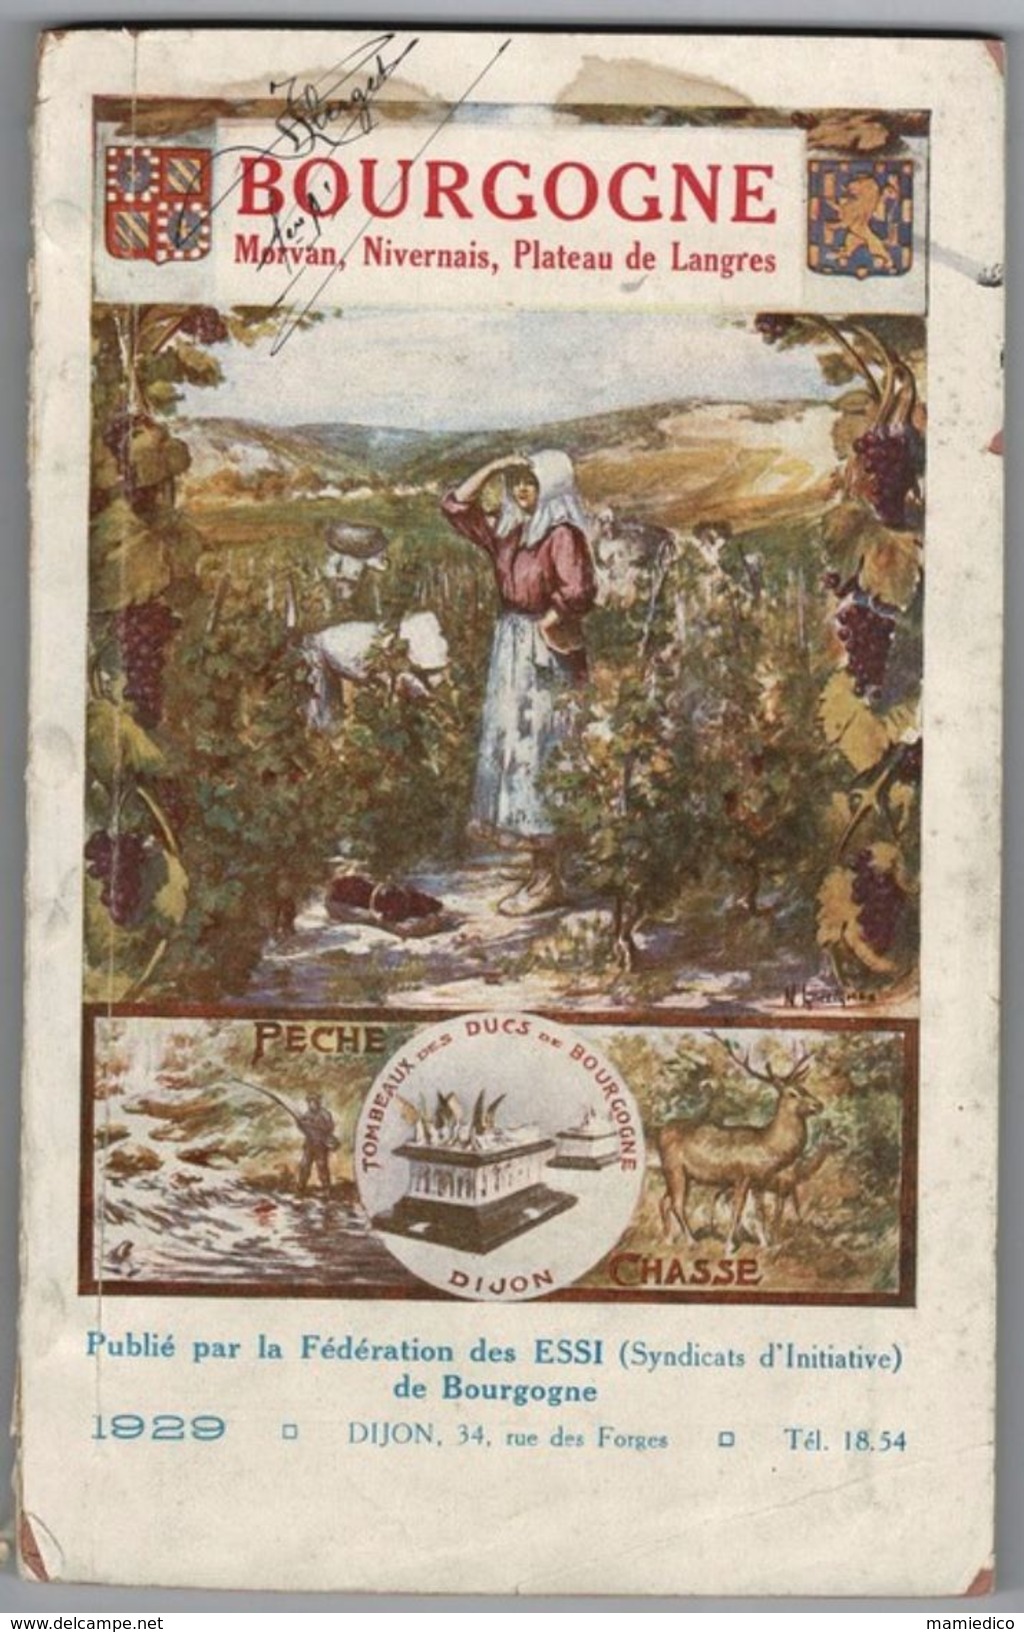 1929 Bourgogne, Morvan, Plateau de Langres Edité par la Fédération des Syndicats d'Initiative: les ESSI